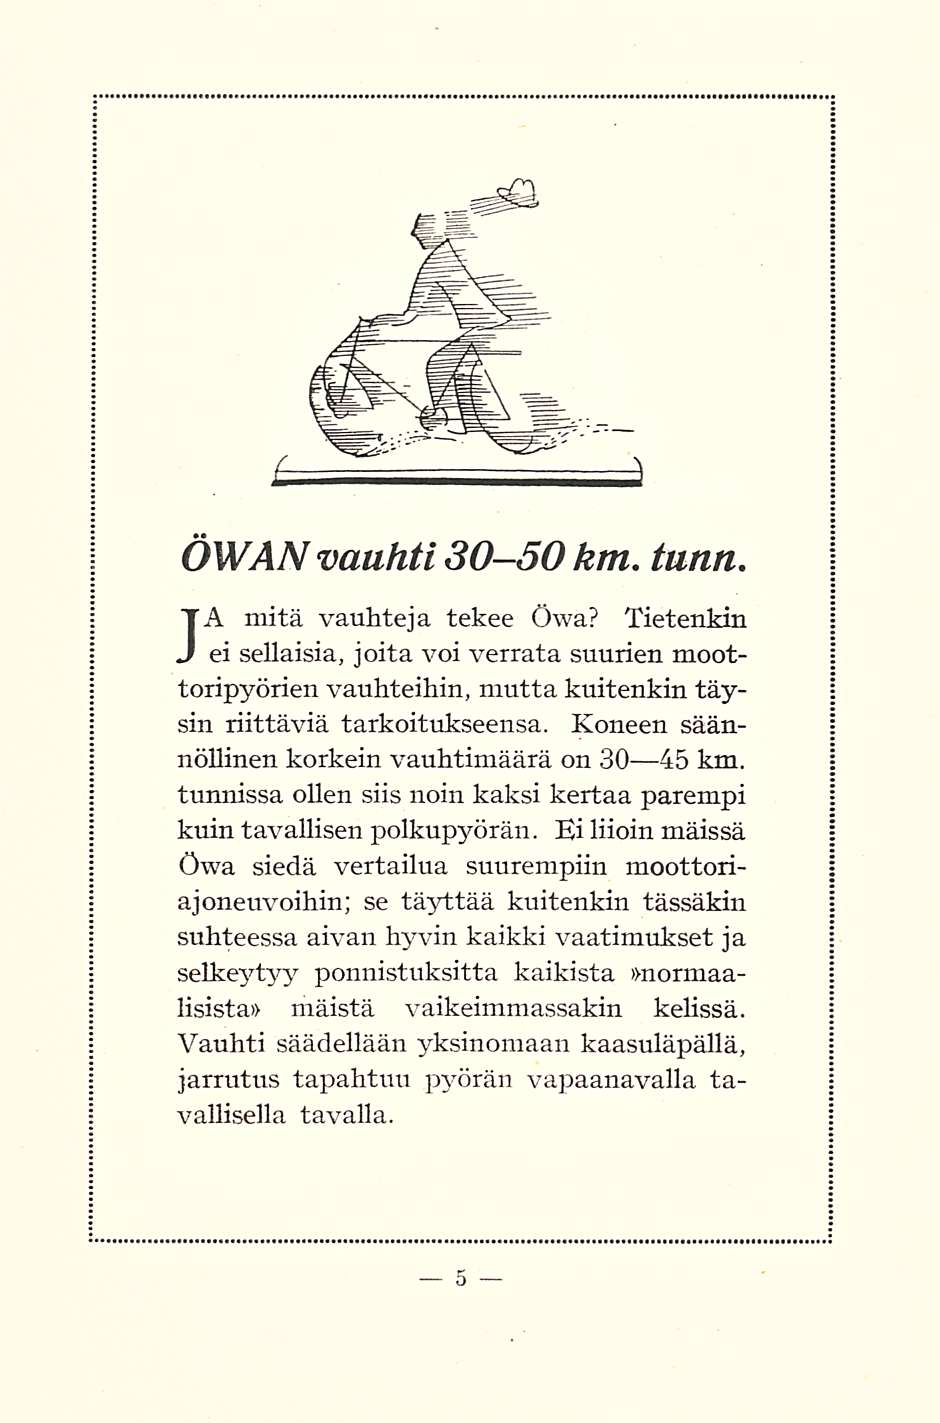 ÖWAN vauhti 30-50km. tunti. JA mitä vauhteja tekee Öwa? Tietenkin ei sellaisia, joita voi verrata suurien moottoripyörien vauhteihin, mutta kuitenkin täysin riittäviä tarkoitukseensa.